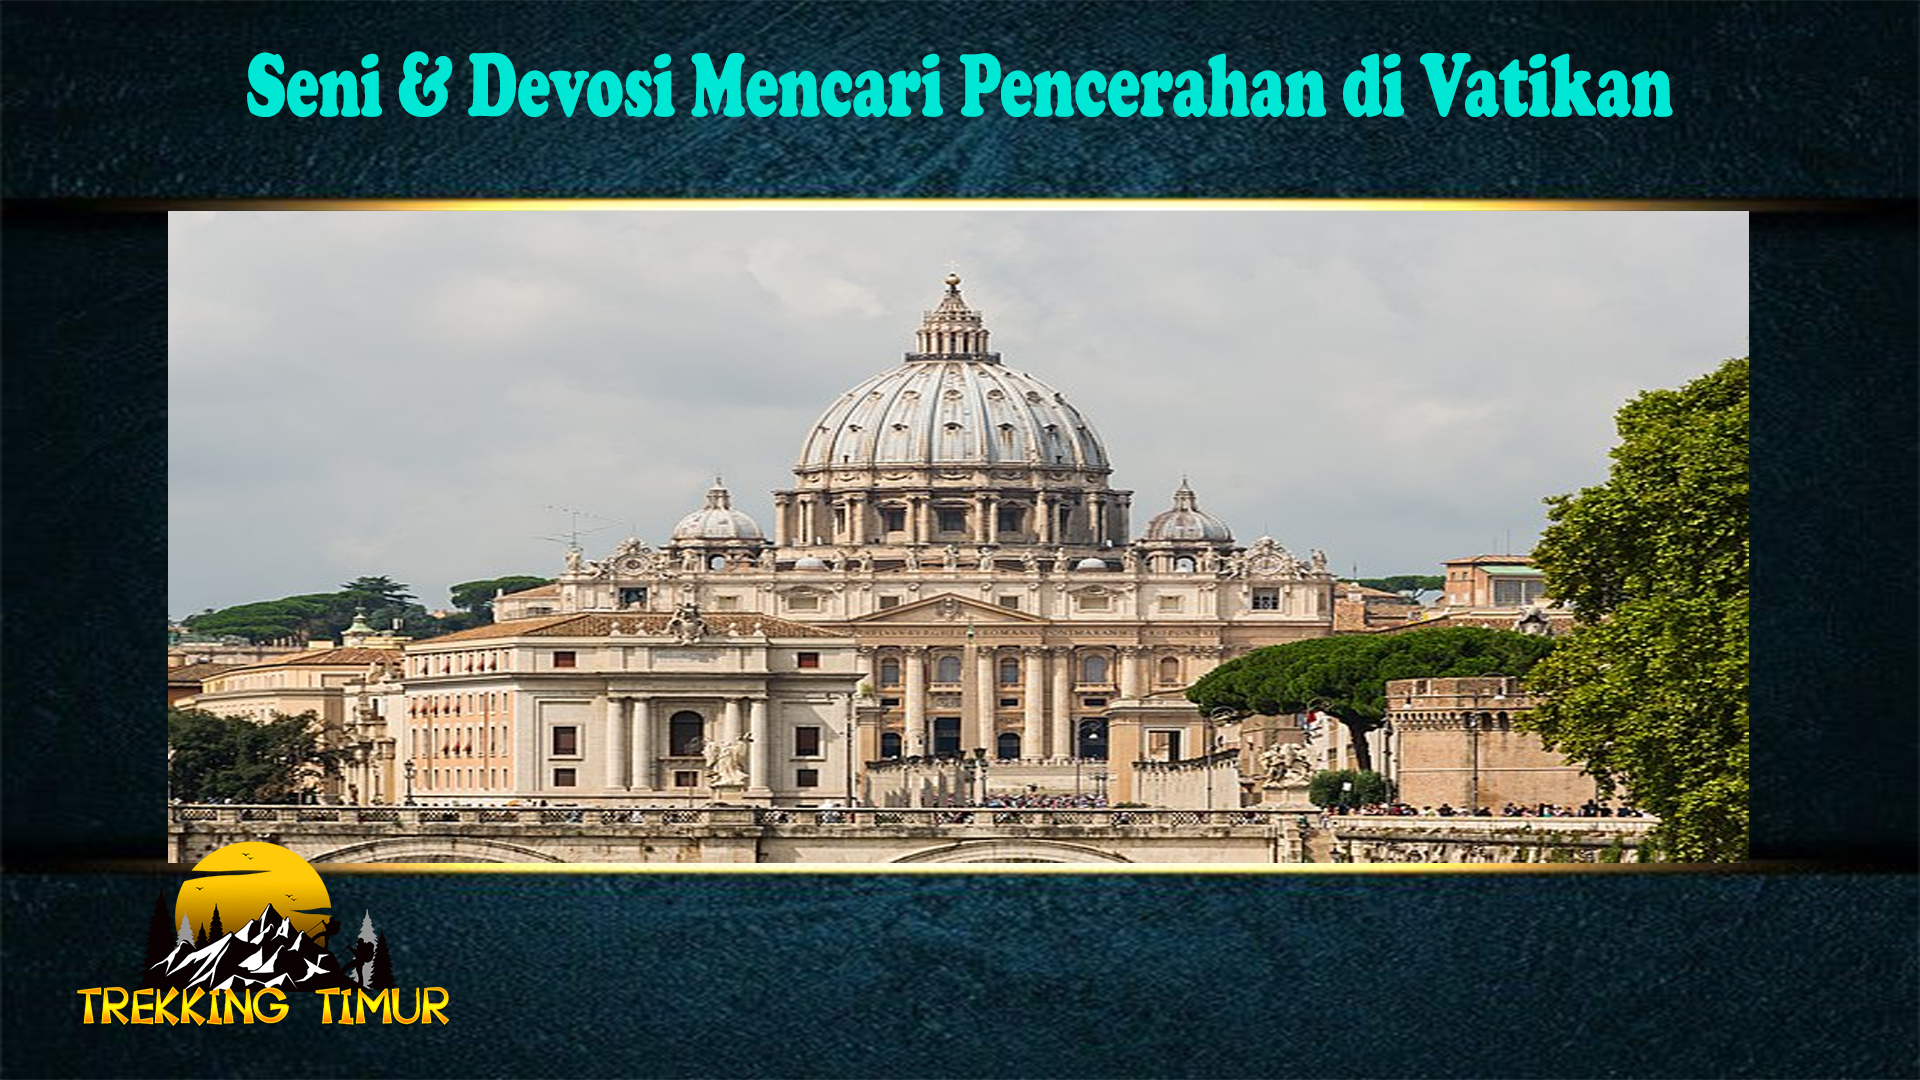 Seni & Devosi Mencari Pencerahan di Vatikan